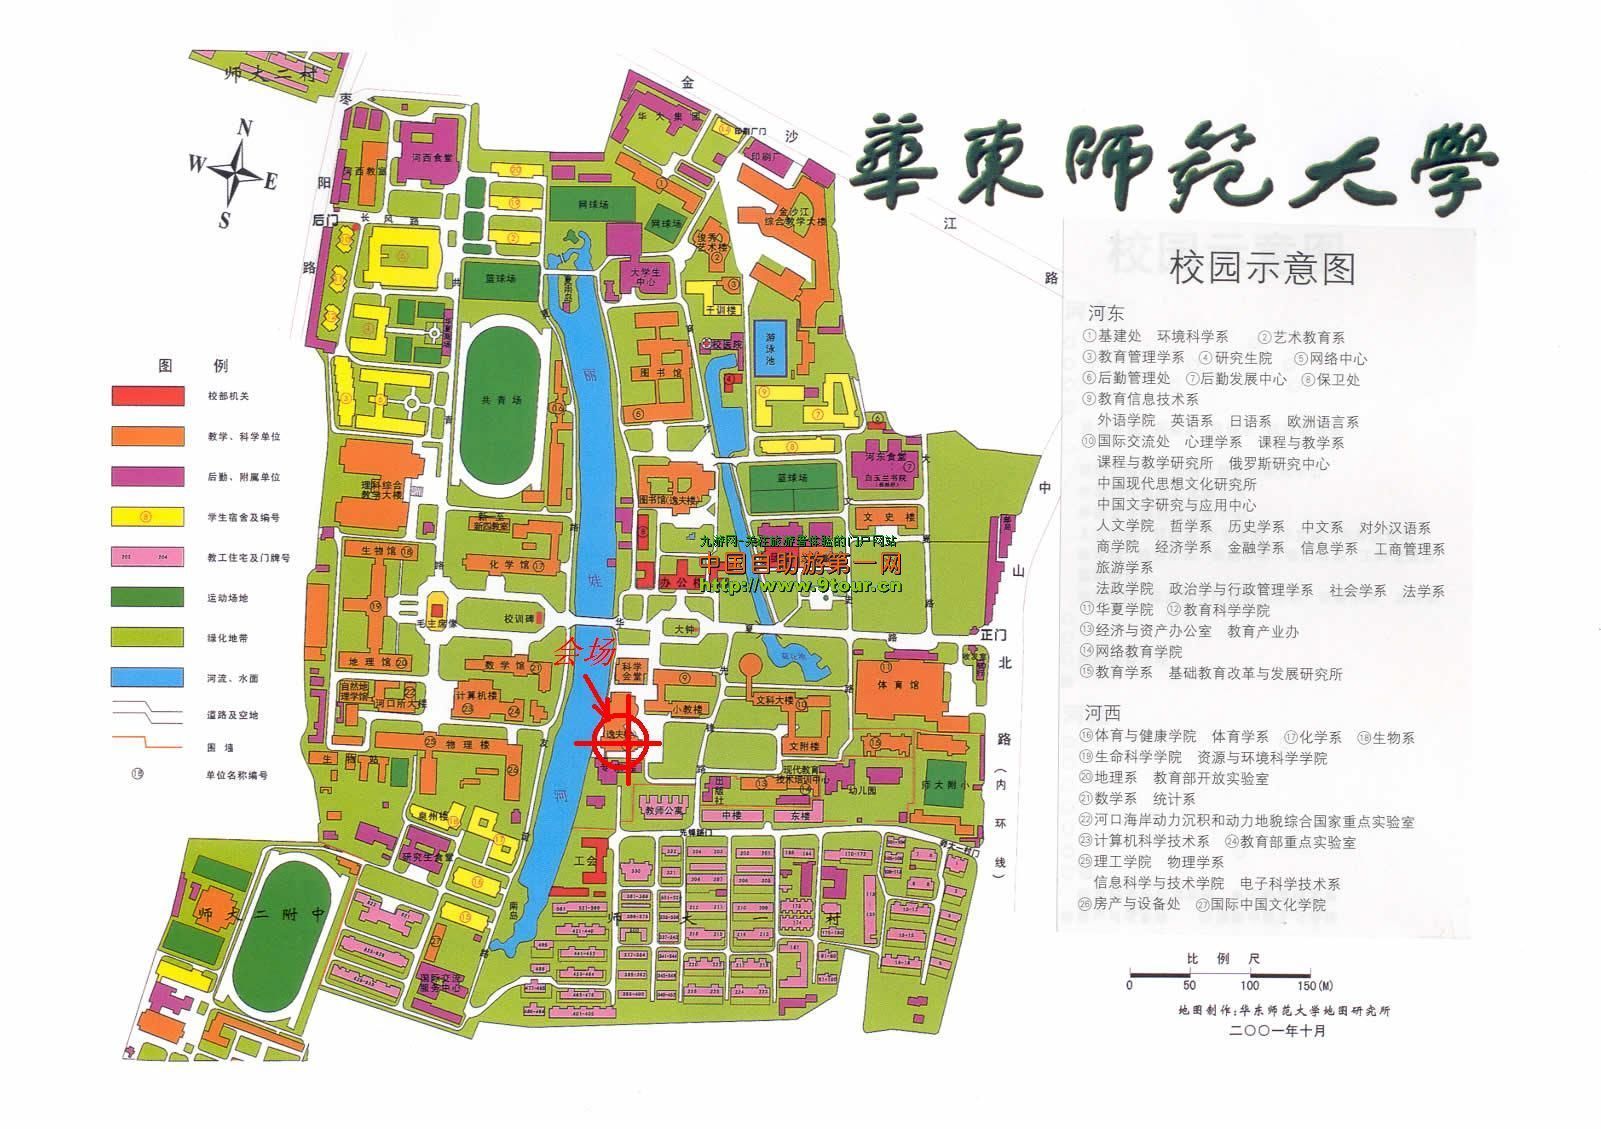 华东师范大学高清版校区地图(地图研究所制作)